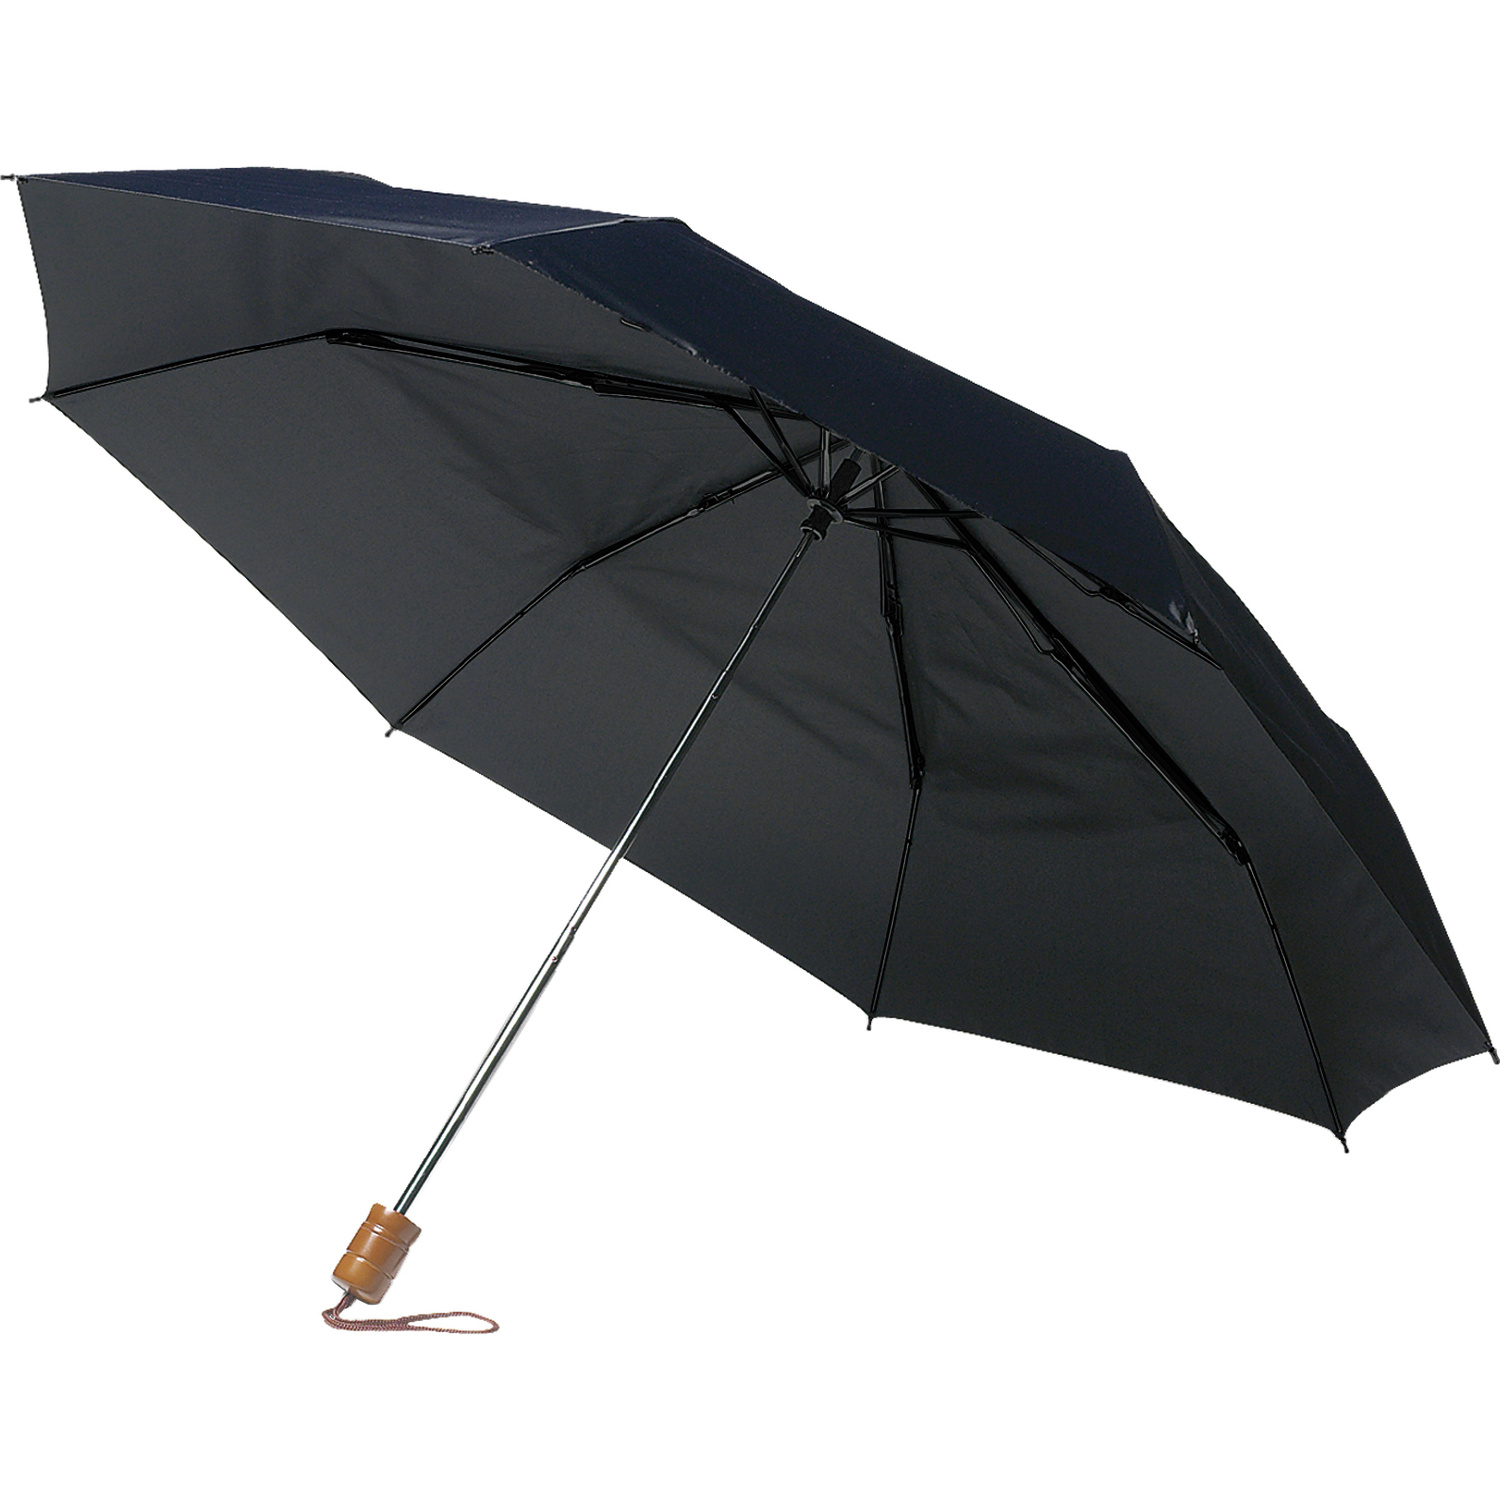 004055 005999999 3d135 ins pro01 fal - Foldable umbrella